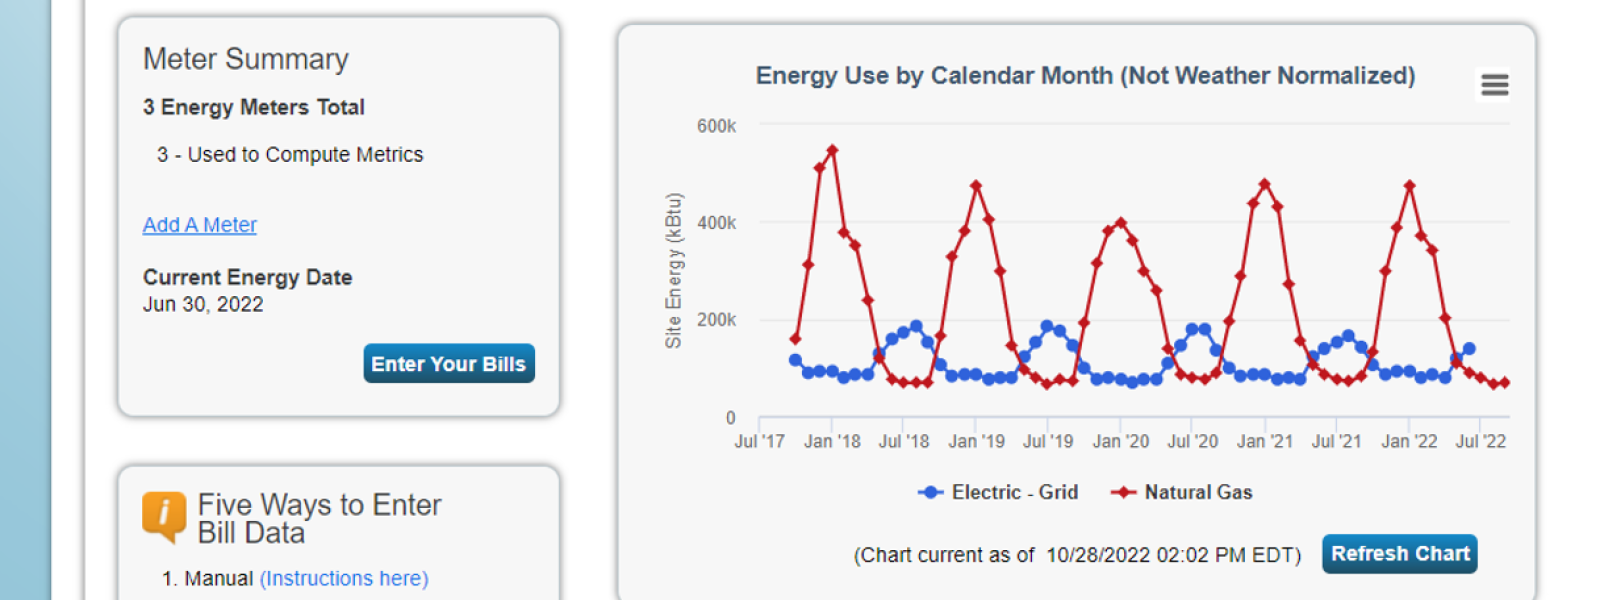 Portfolio Manager Energy Use Calendar